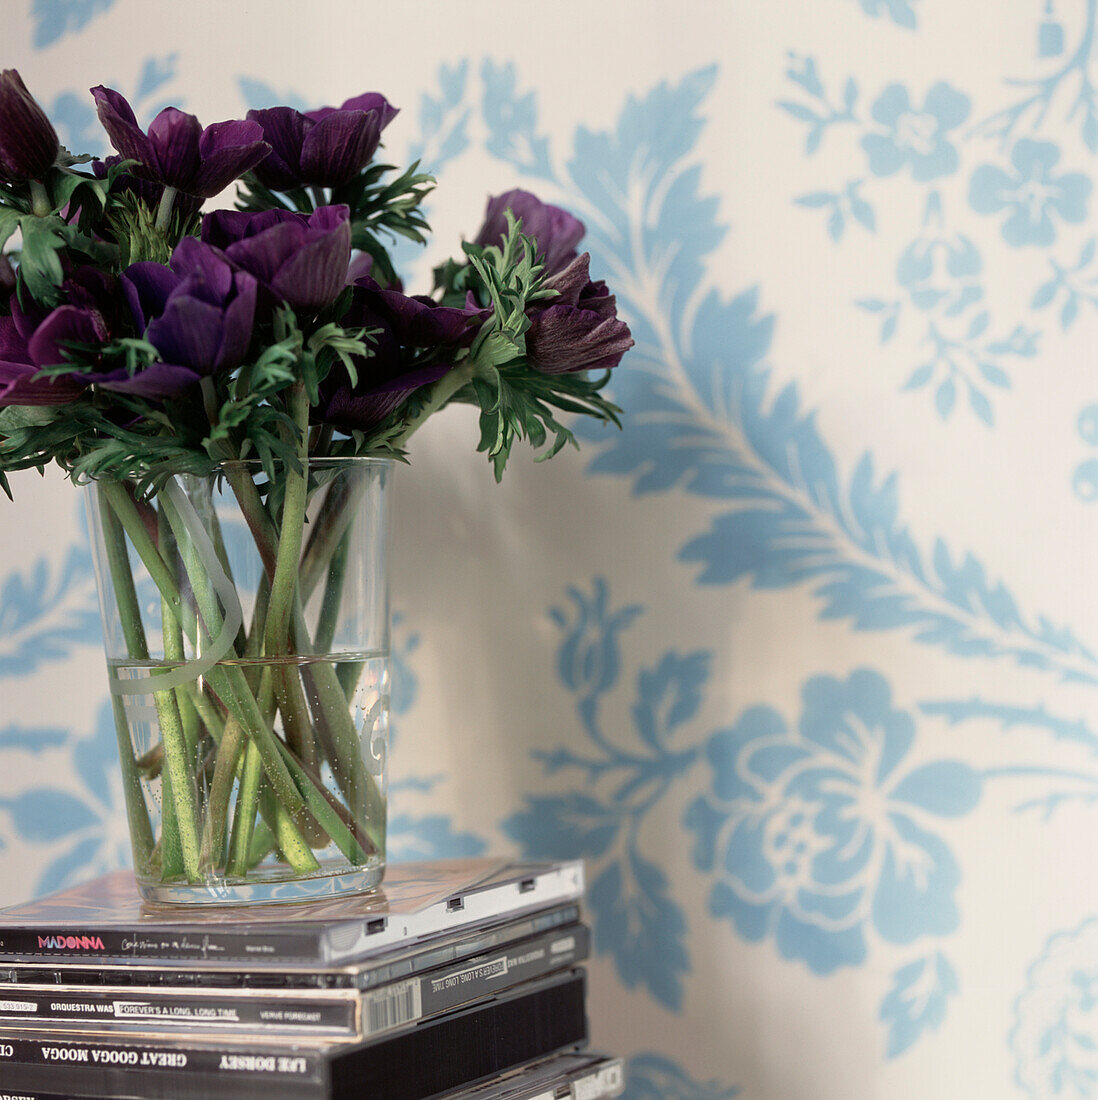 Detail eines Blumenarrangements in einer Glasvase, die auf einem Stapel CDs ruht, mit blau-weißer Blumentapete an den Wänden